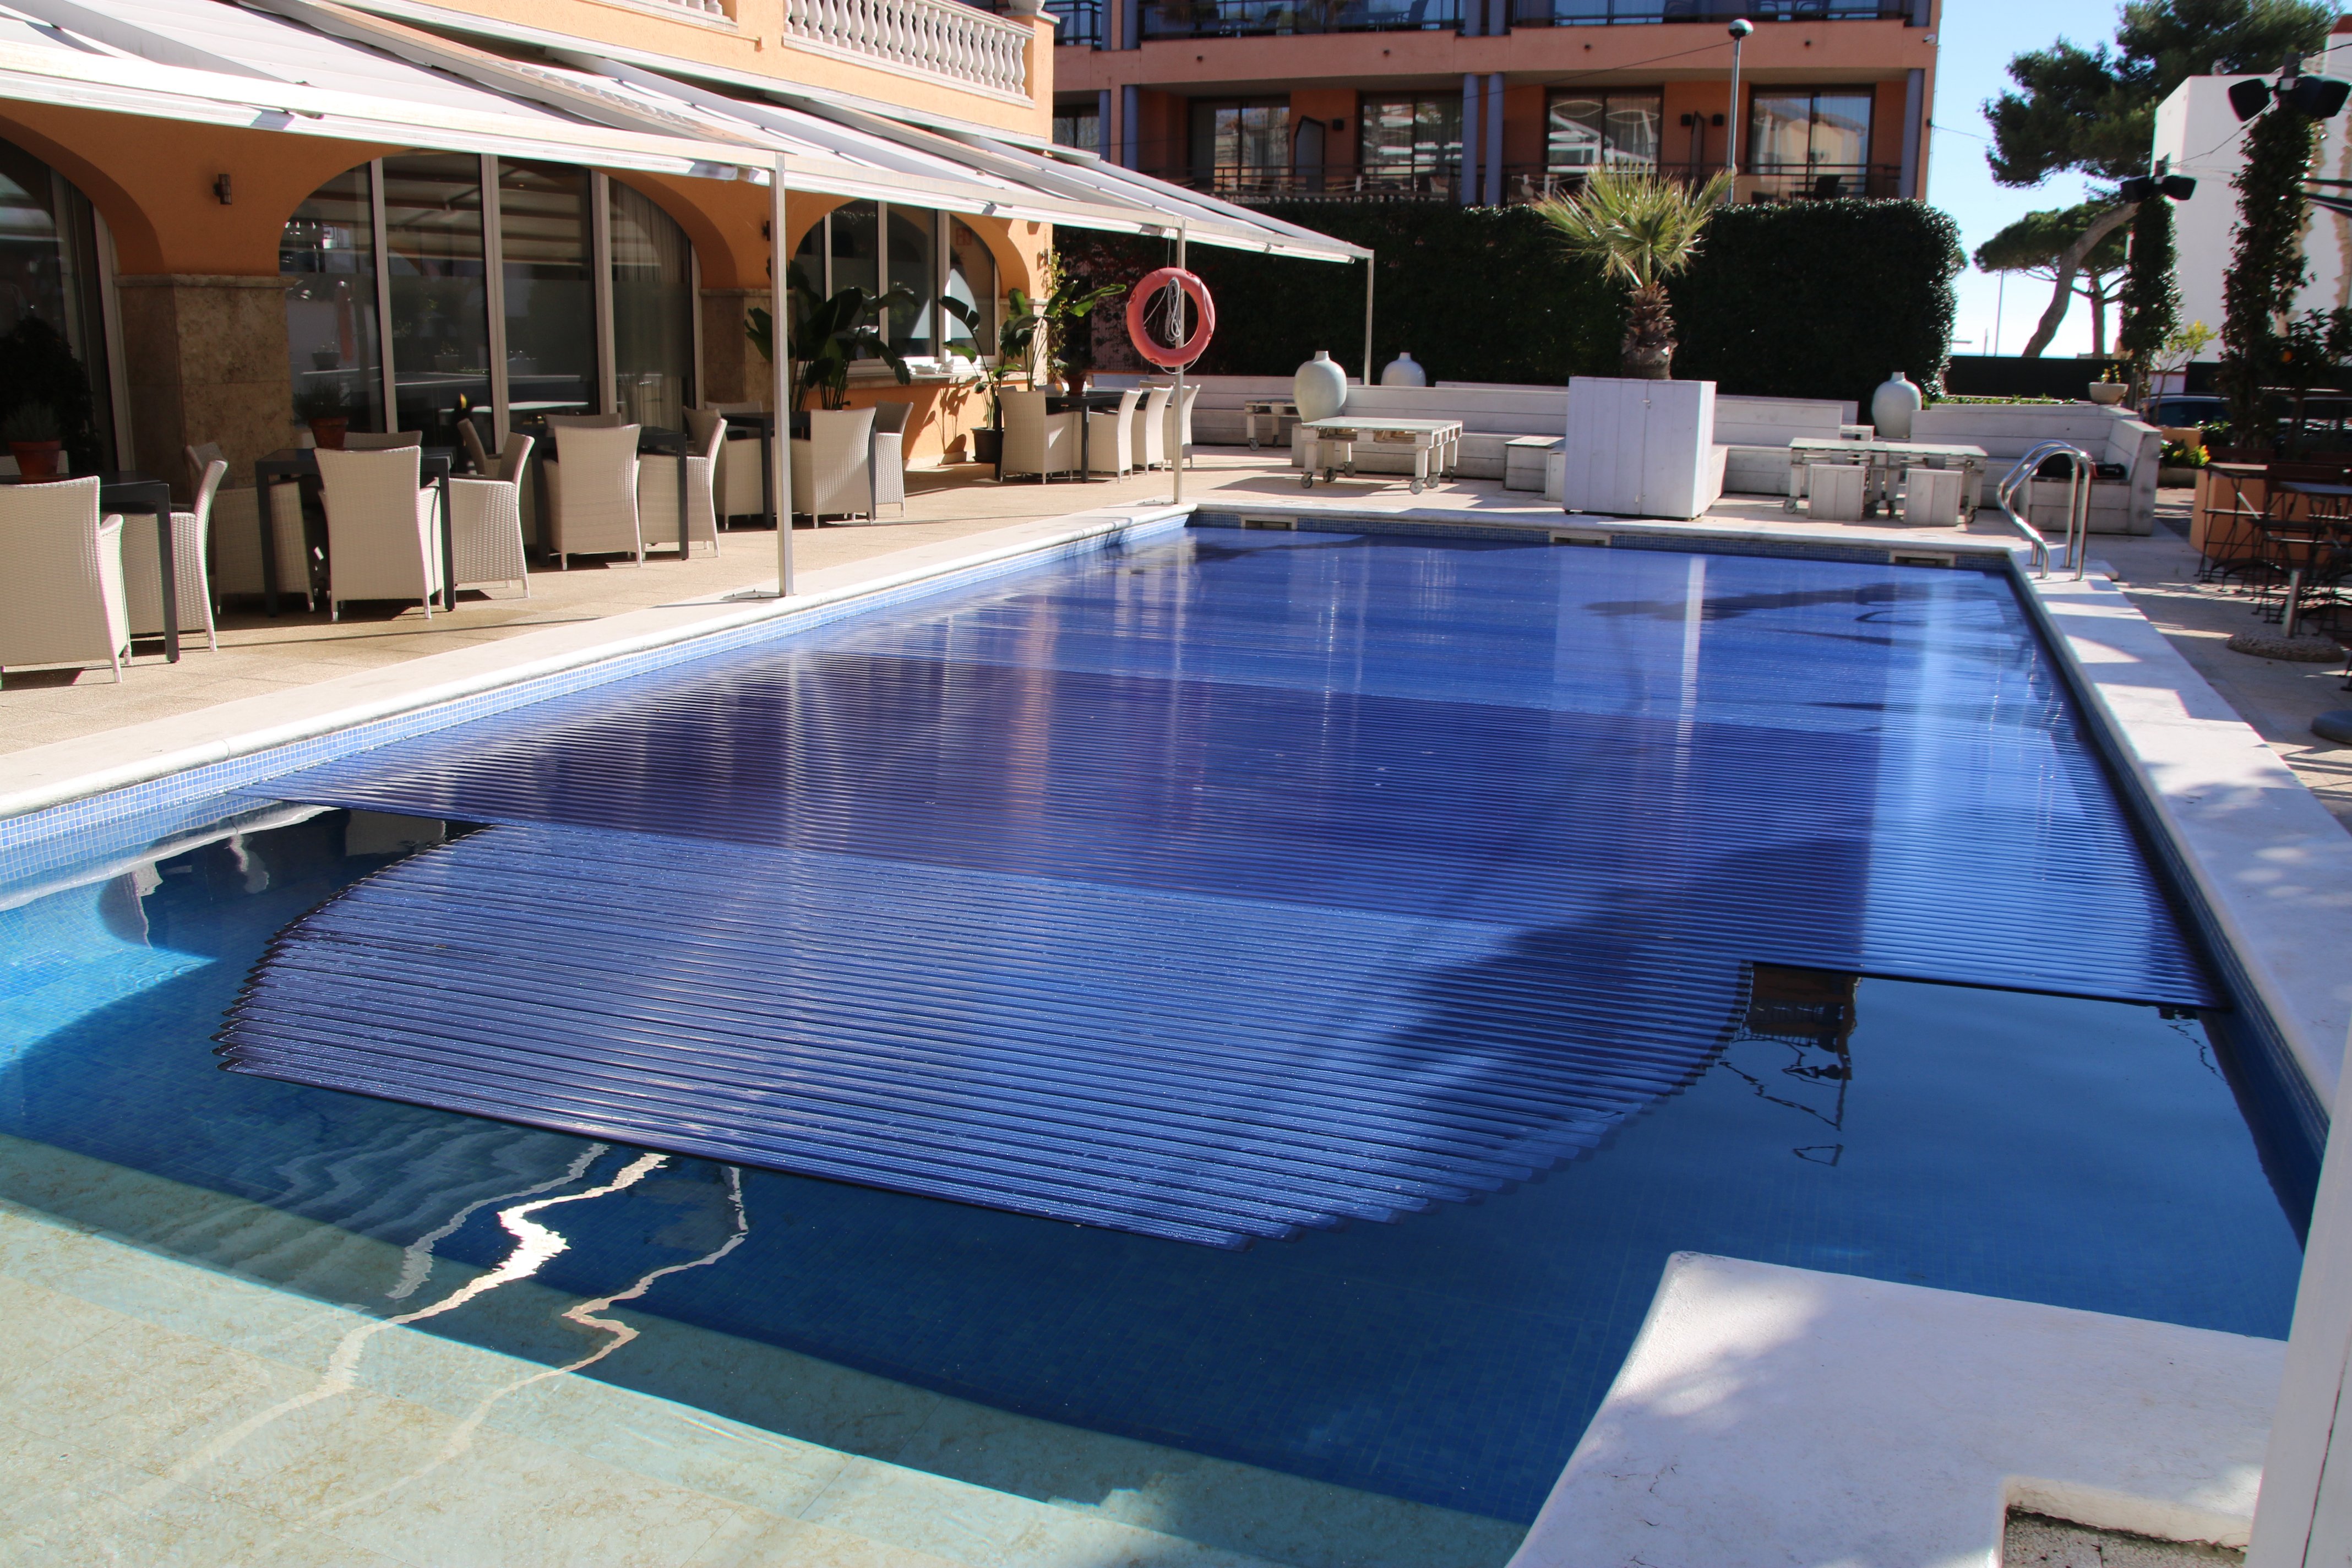 Els hotels de Barcelona, a favor que les piscines privades siguin considerades refugis climàtics